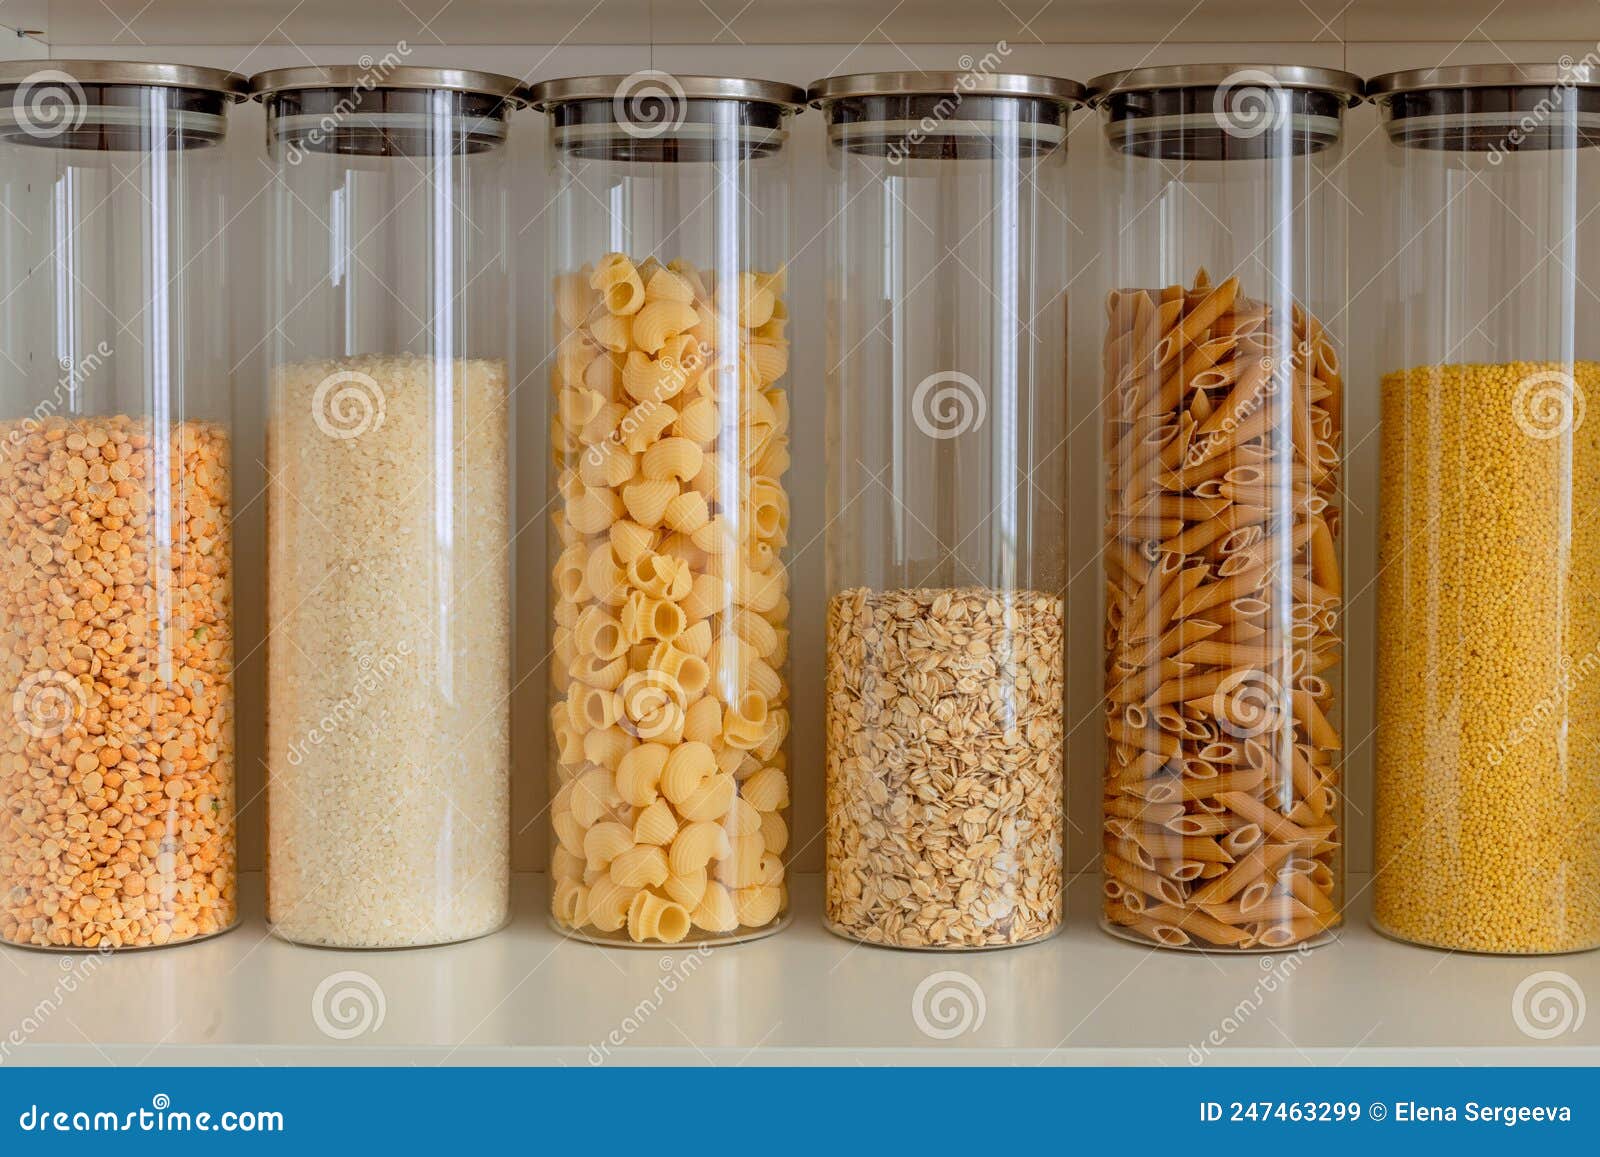 Piselli Di Riso Pasta Avena Semi Di Cereali in Contenitori